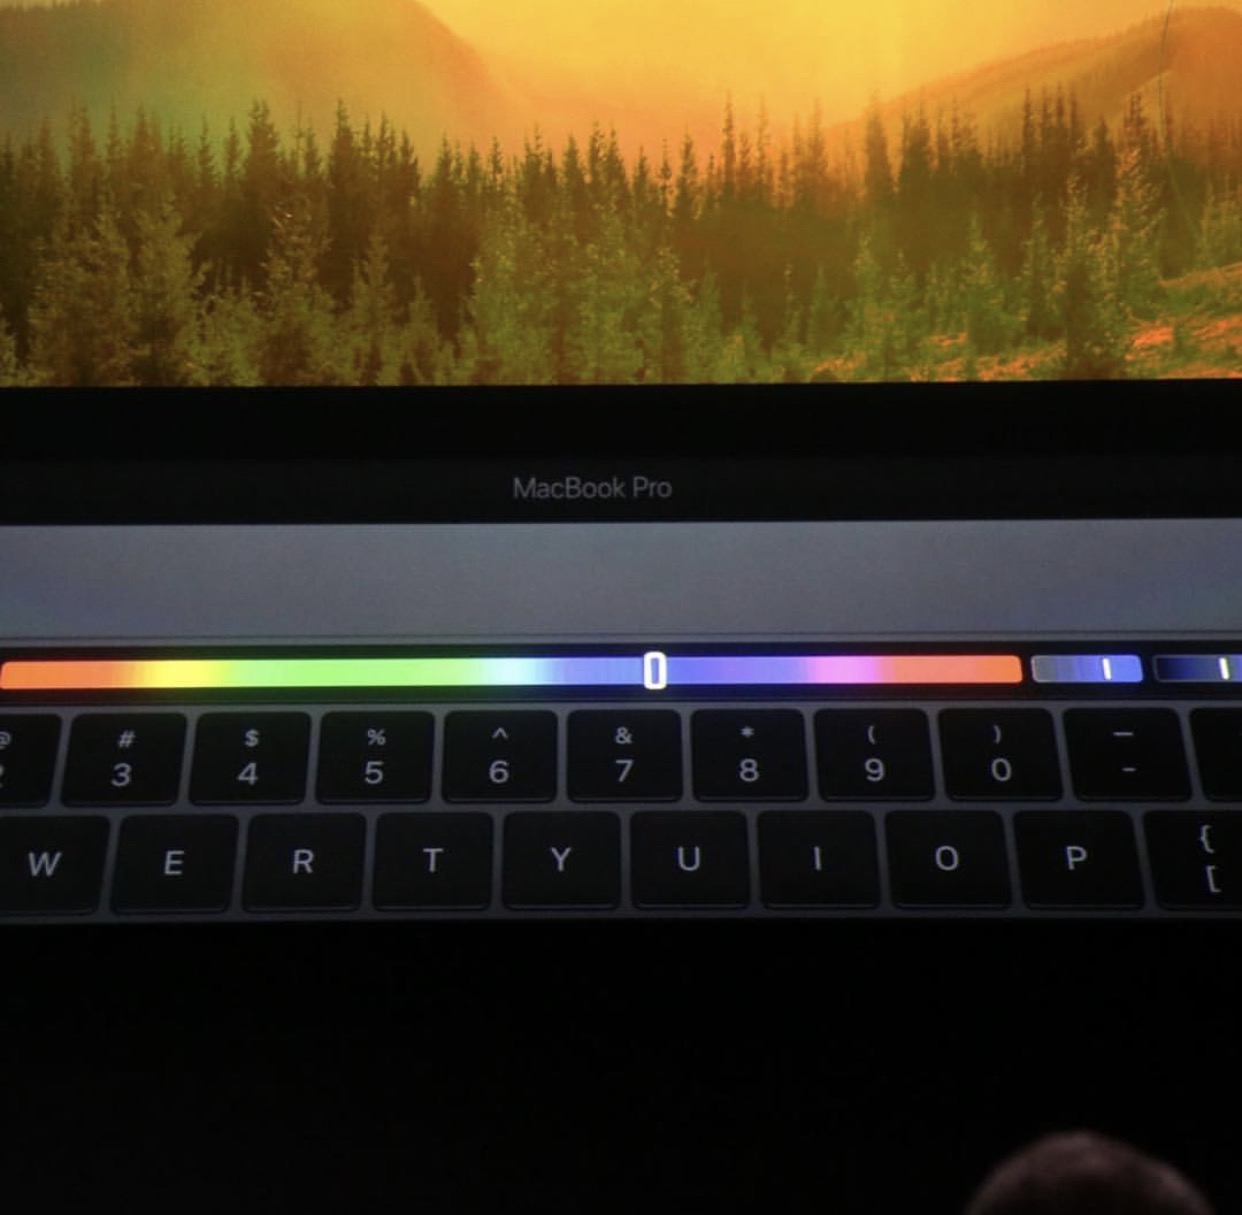 苹果发布全新一代MacBook Pro:传言竟成真